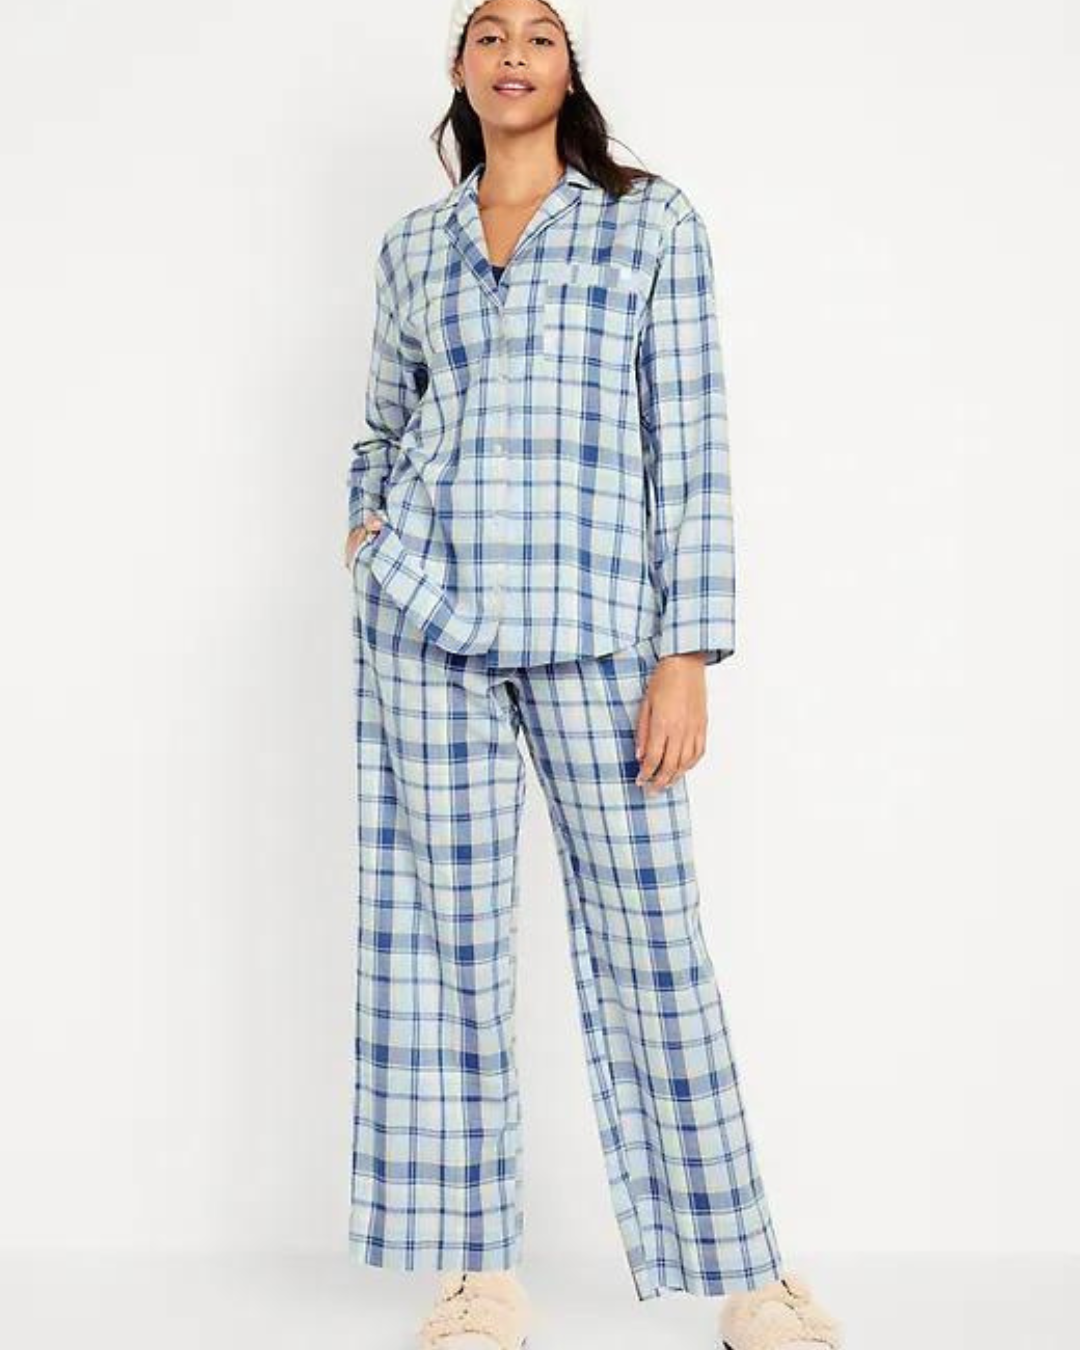 Cute Womens Pajamas